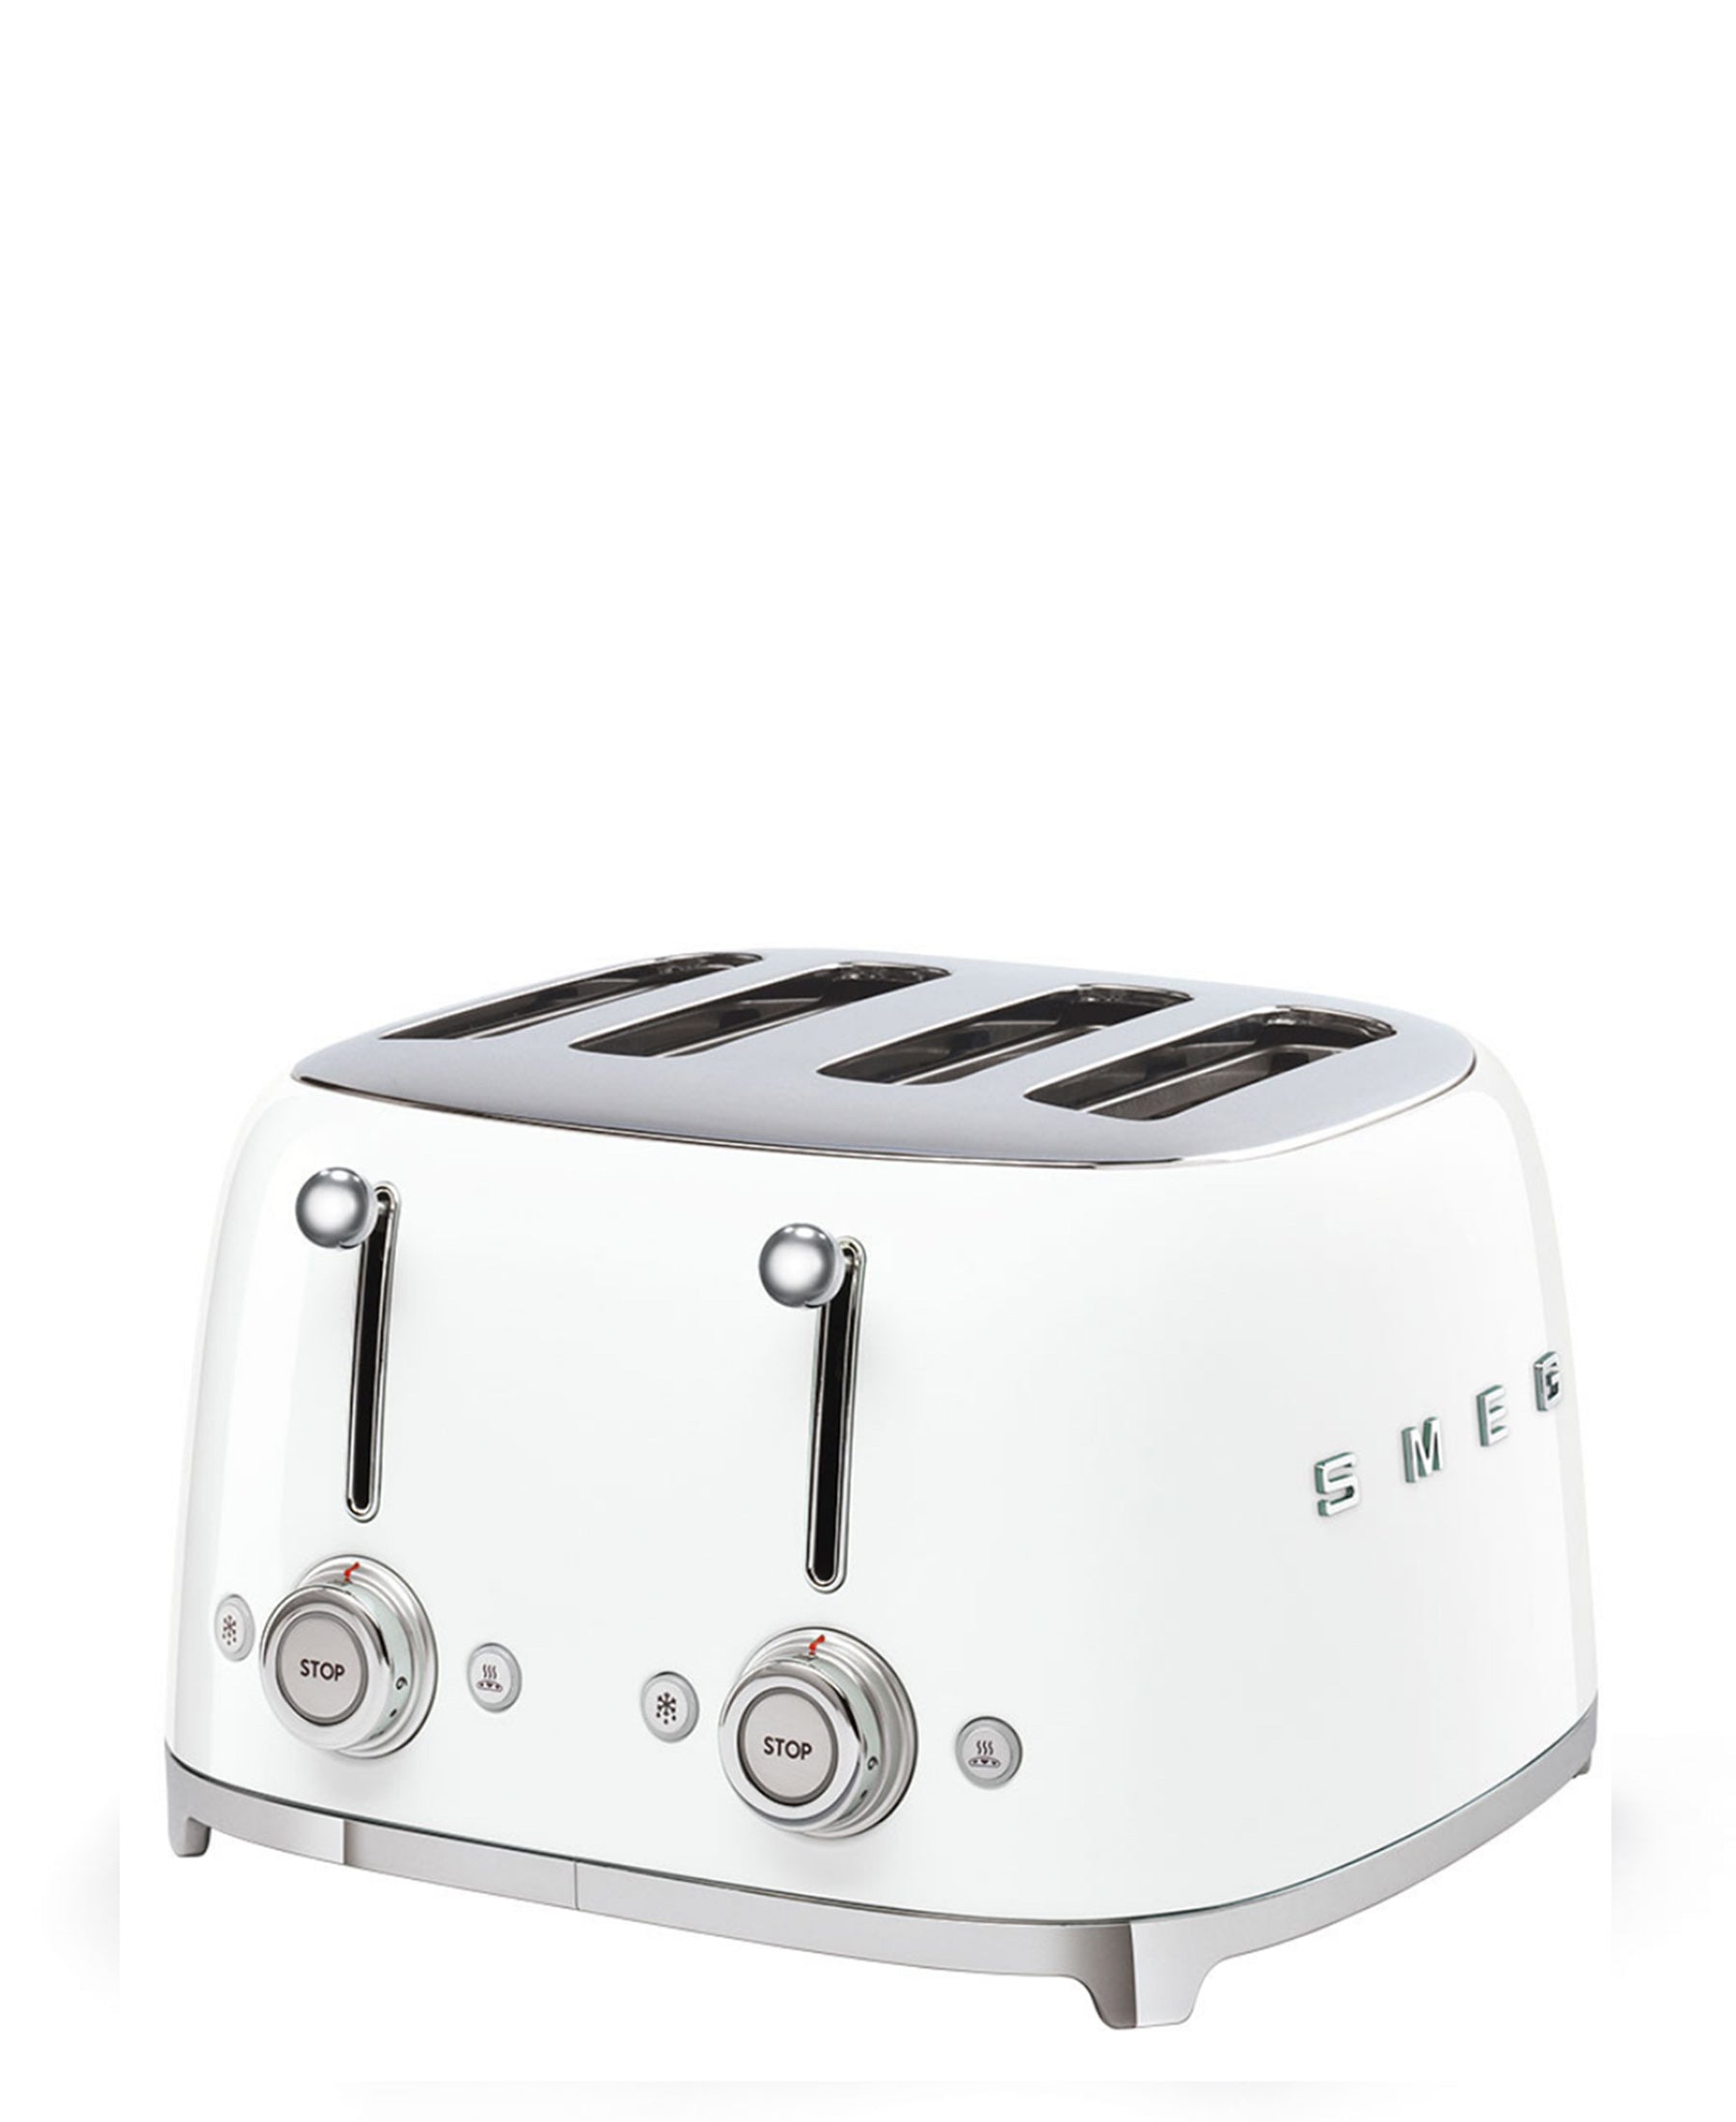 Smeg Retro 2000W 4 Slice Square Toaster - White